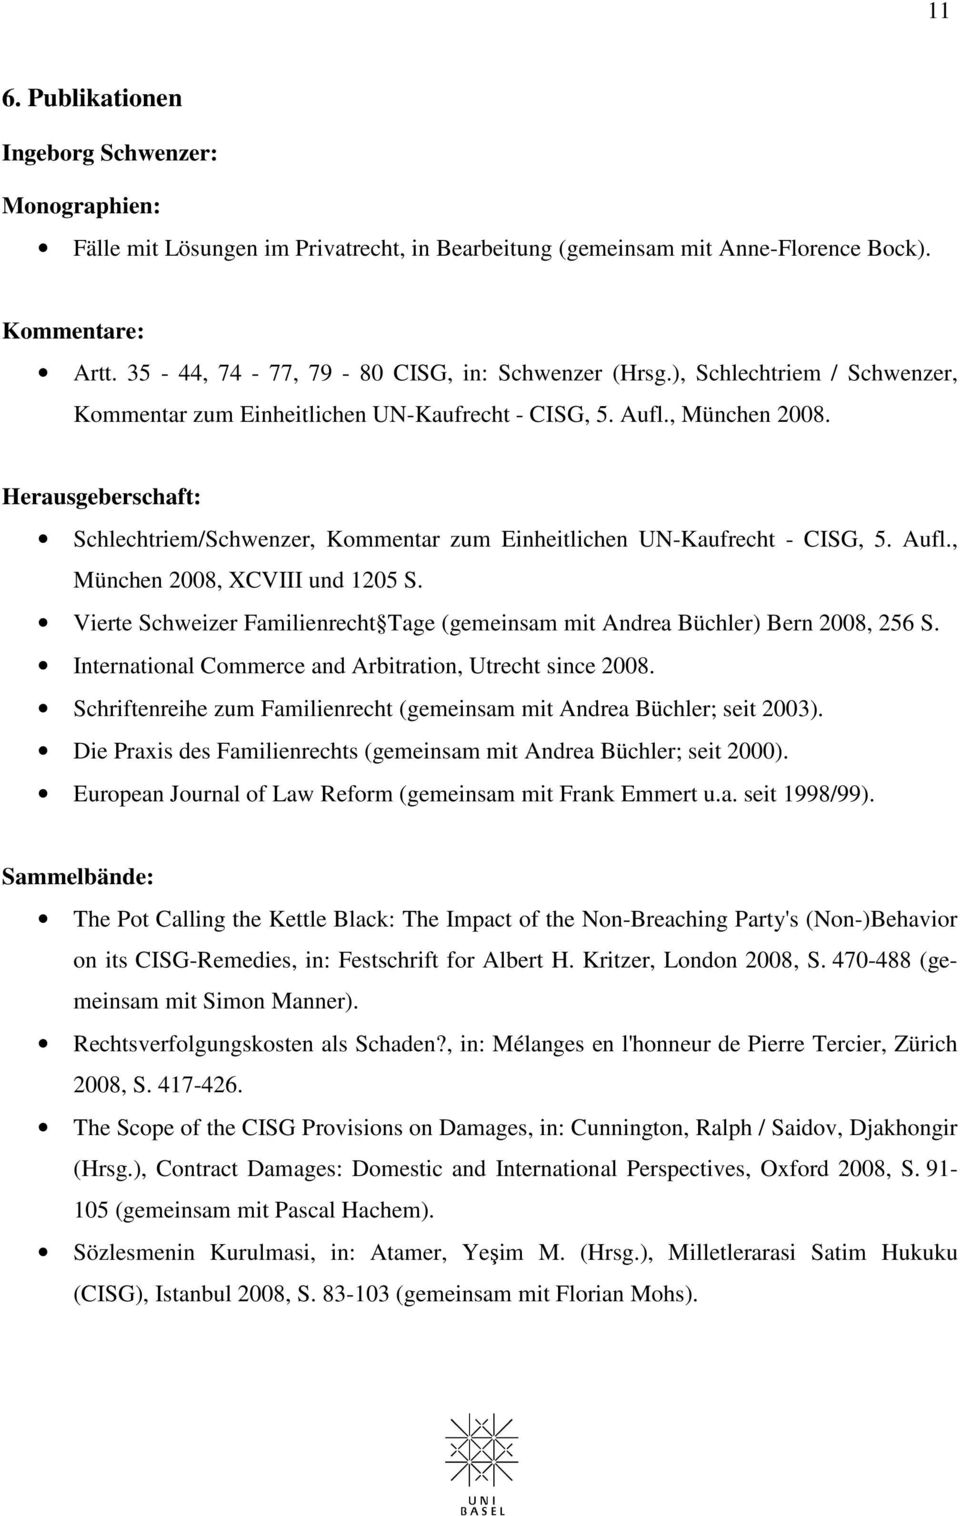 Herausgeberschaft: Schlechtriem/Schwenzer, Kommentar zum Einheitlichen UN-Kaufrecht - CISG, 5. Aufl., München 2008, XCVIII und 1205 S.